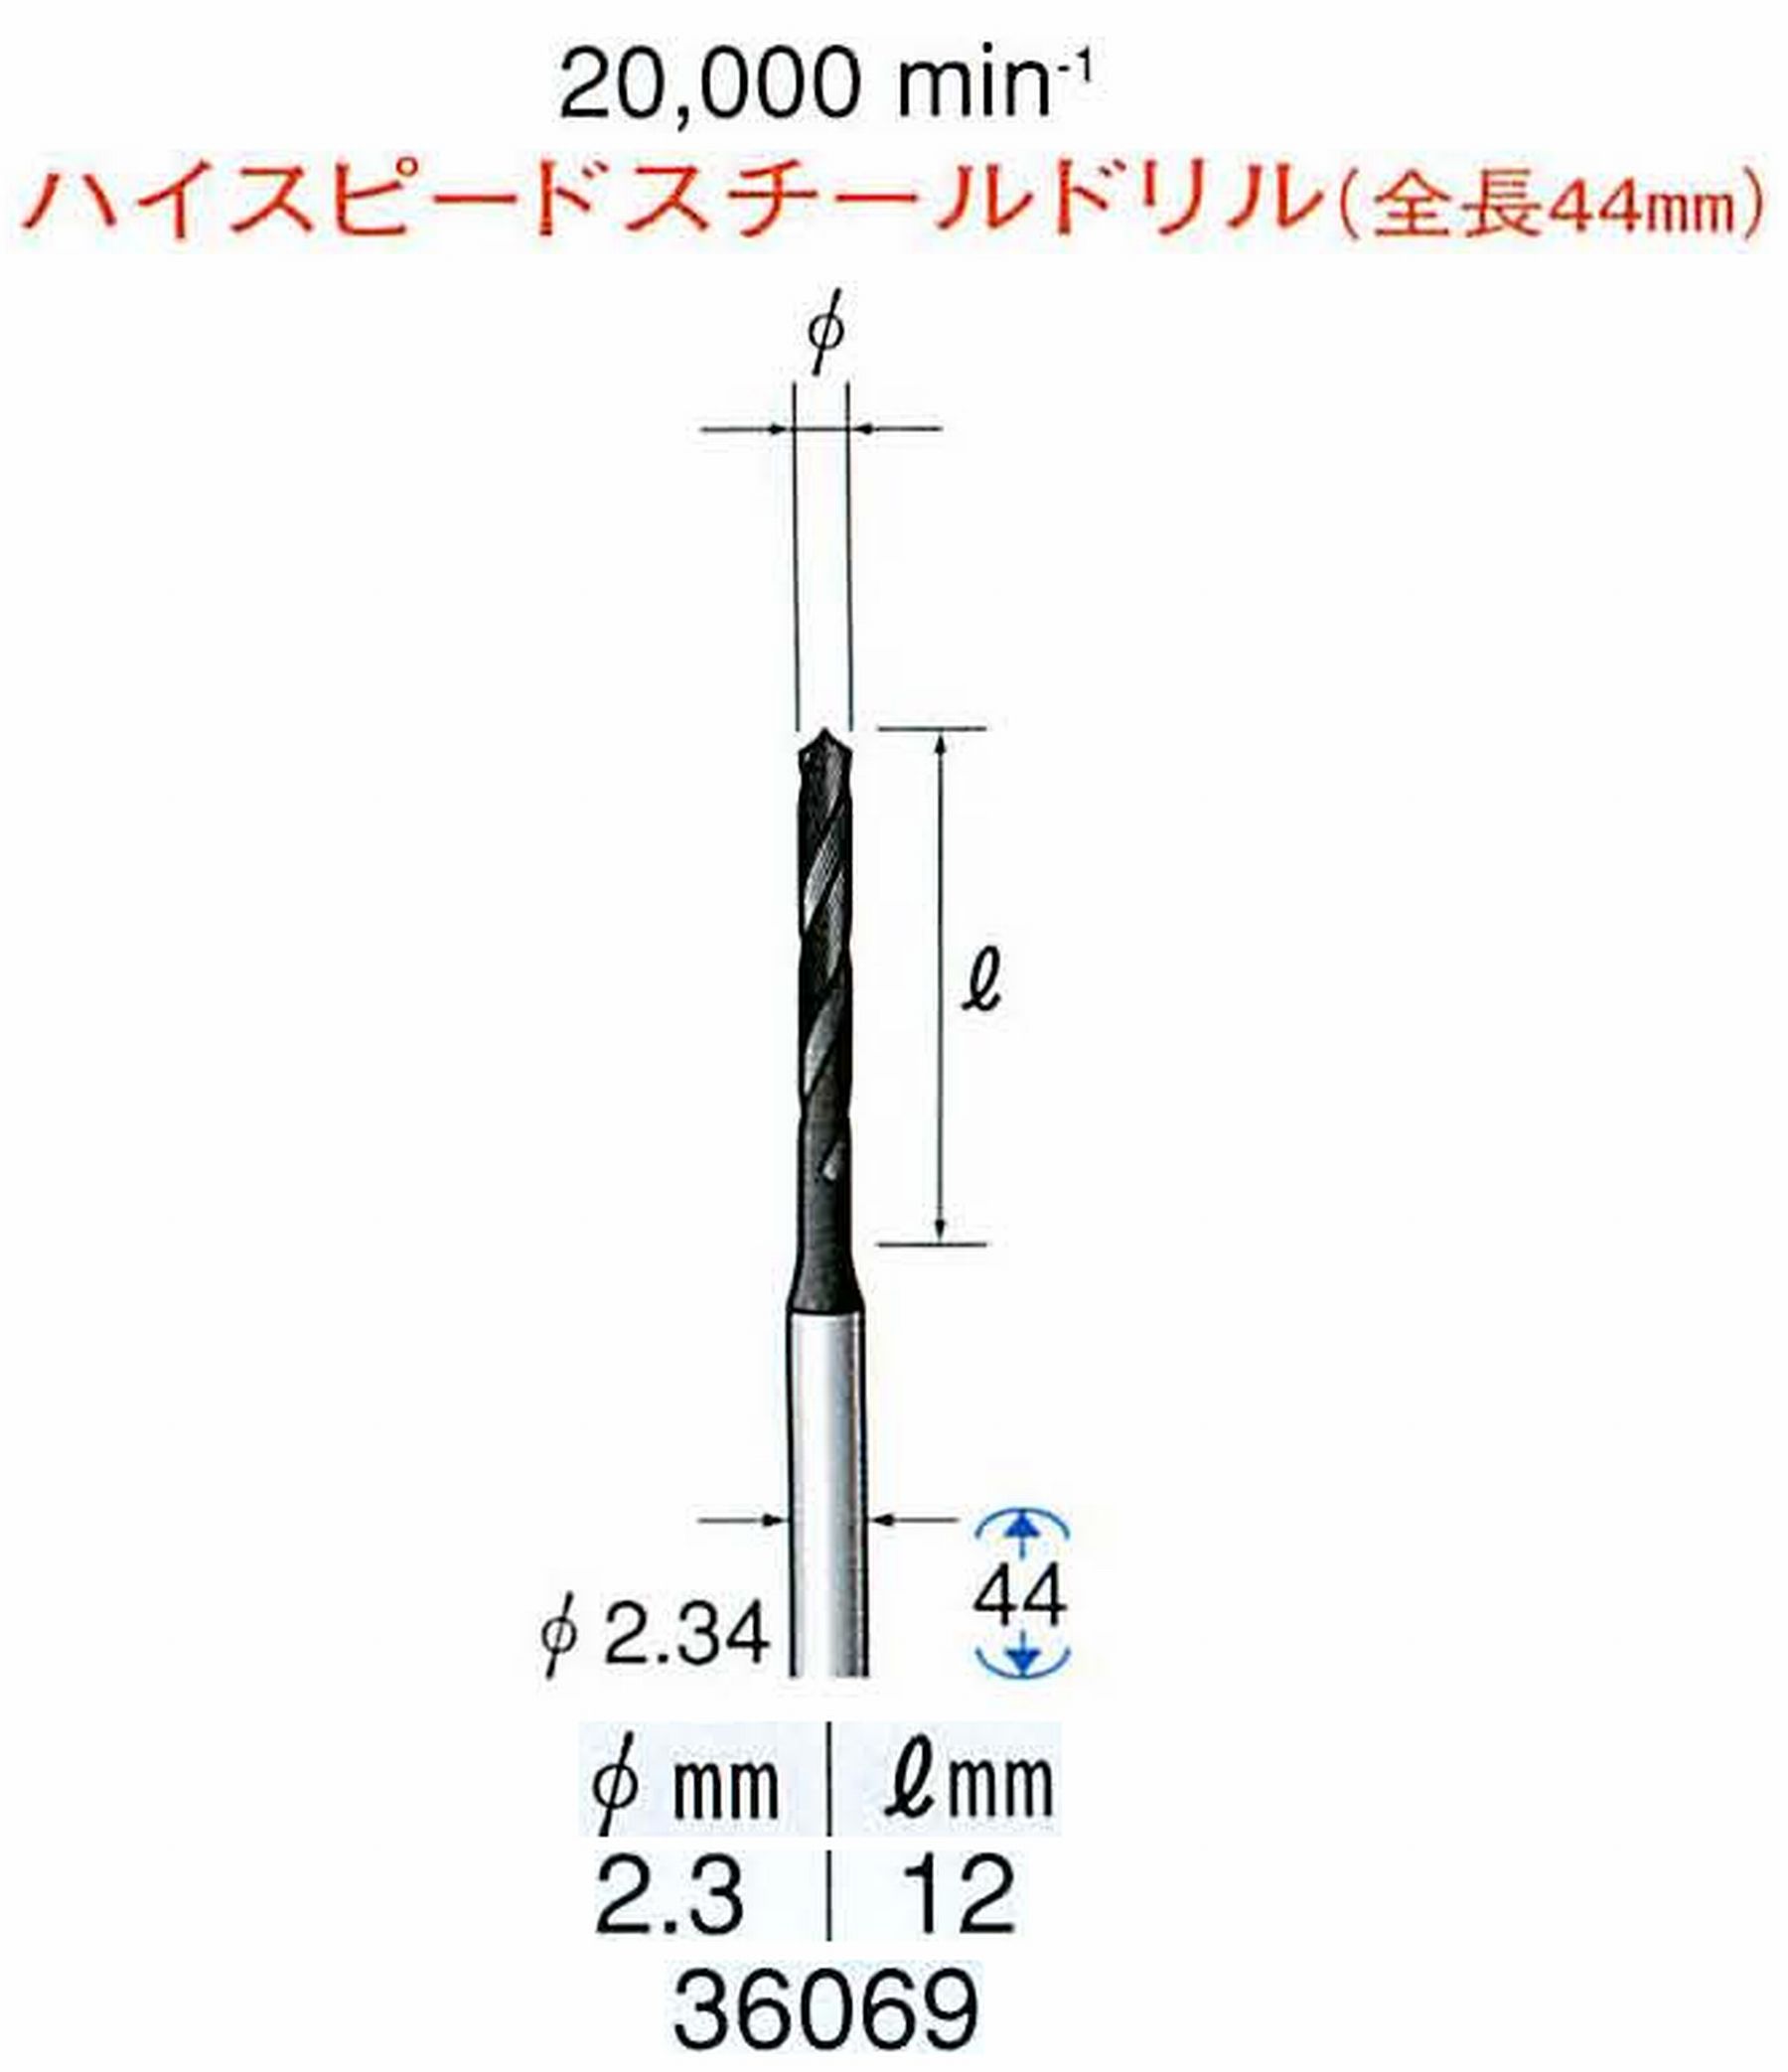 ナカニシ/NAKANISHI ツイストドリル ハイスピードスチール(H.S.S)ドリル(全長44mm) 軸径(シャンク) φ2.34mm 36069